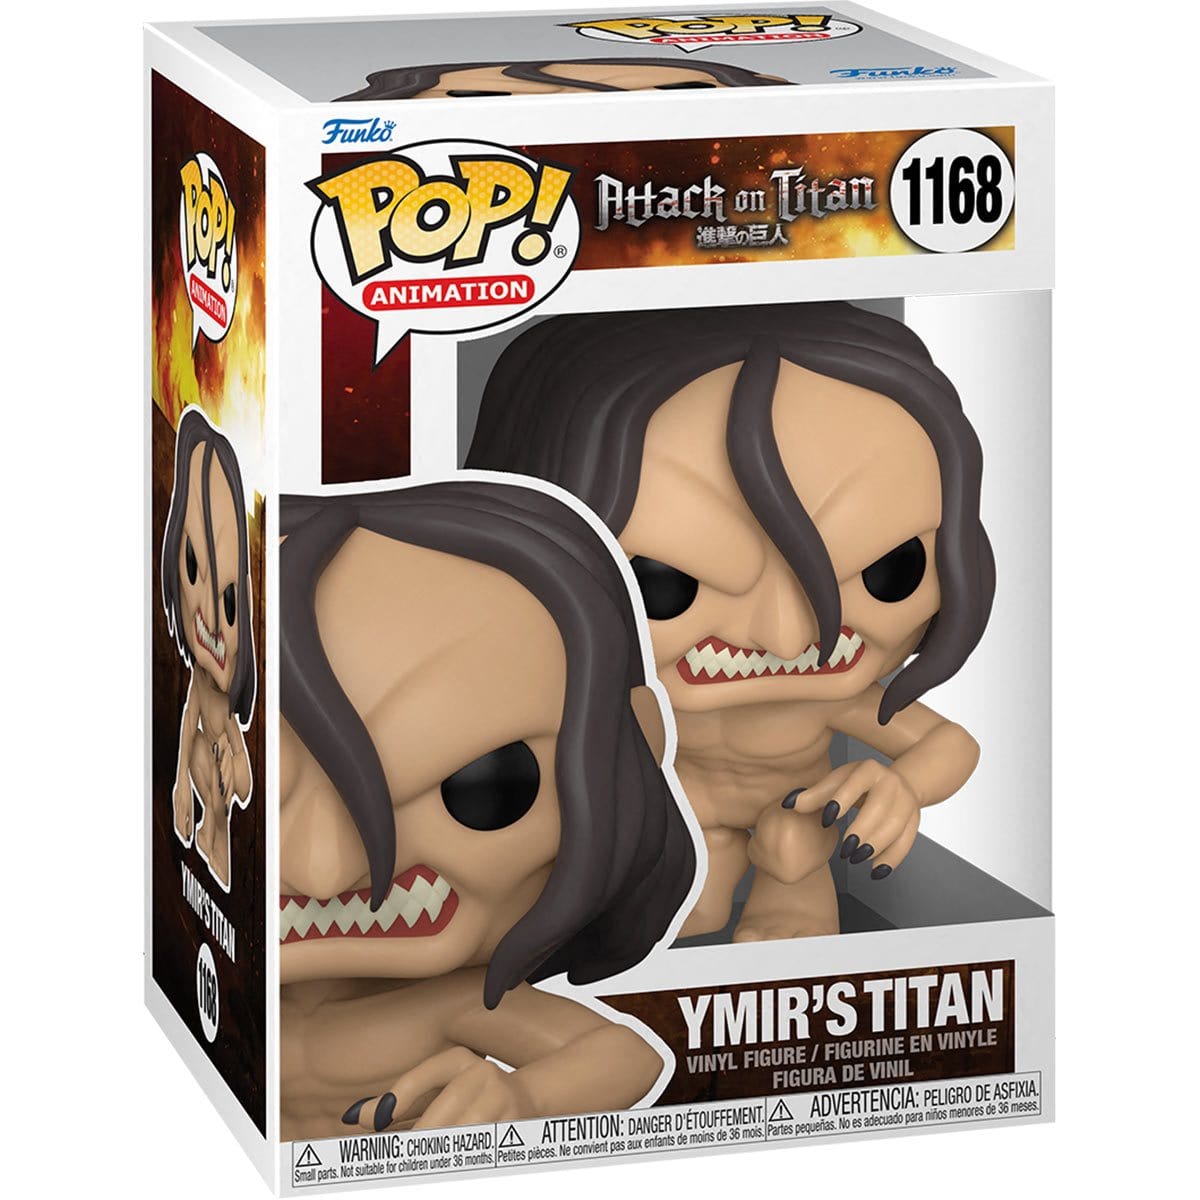 Funko Pop! Attack on Titan Ymir's Titan #1168 - Pop-O-Loco - Funko